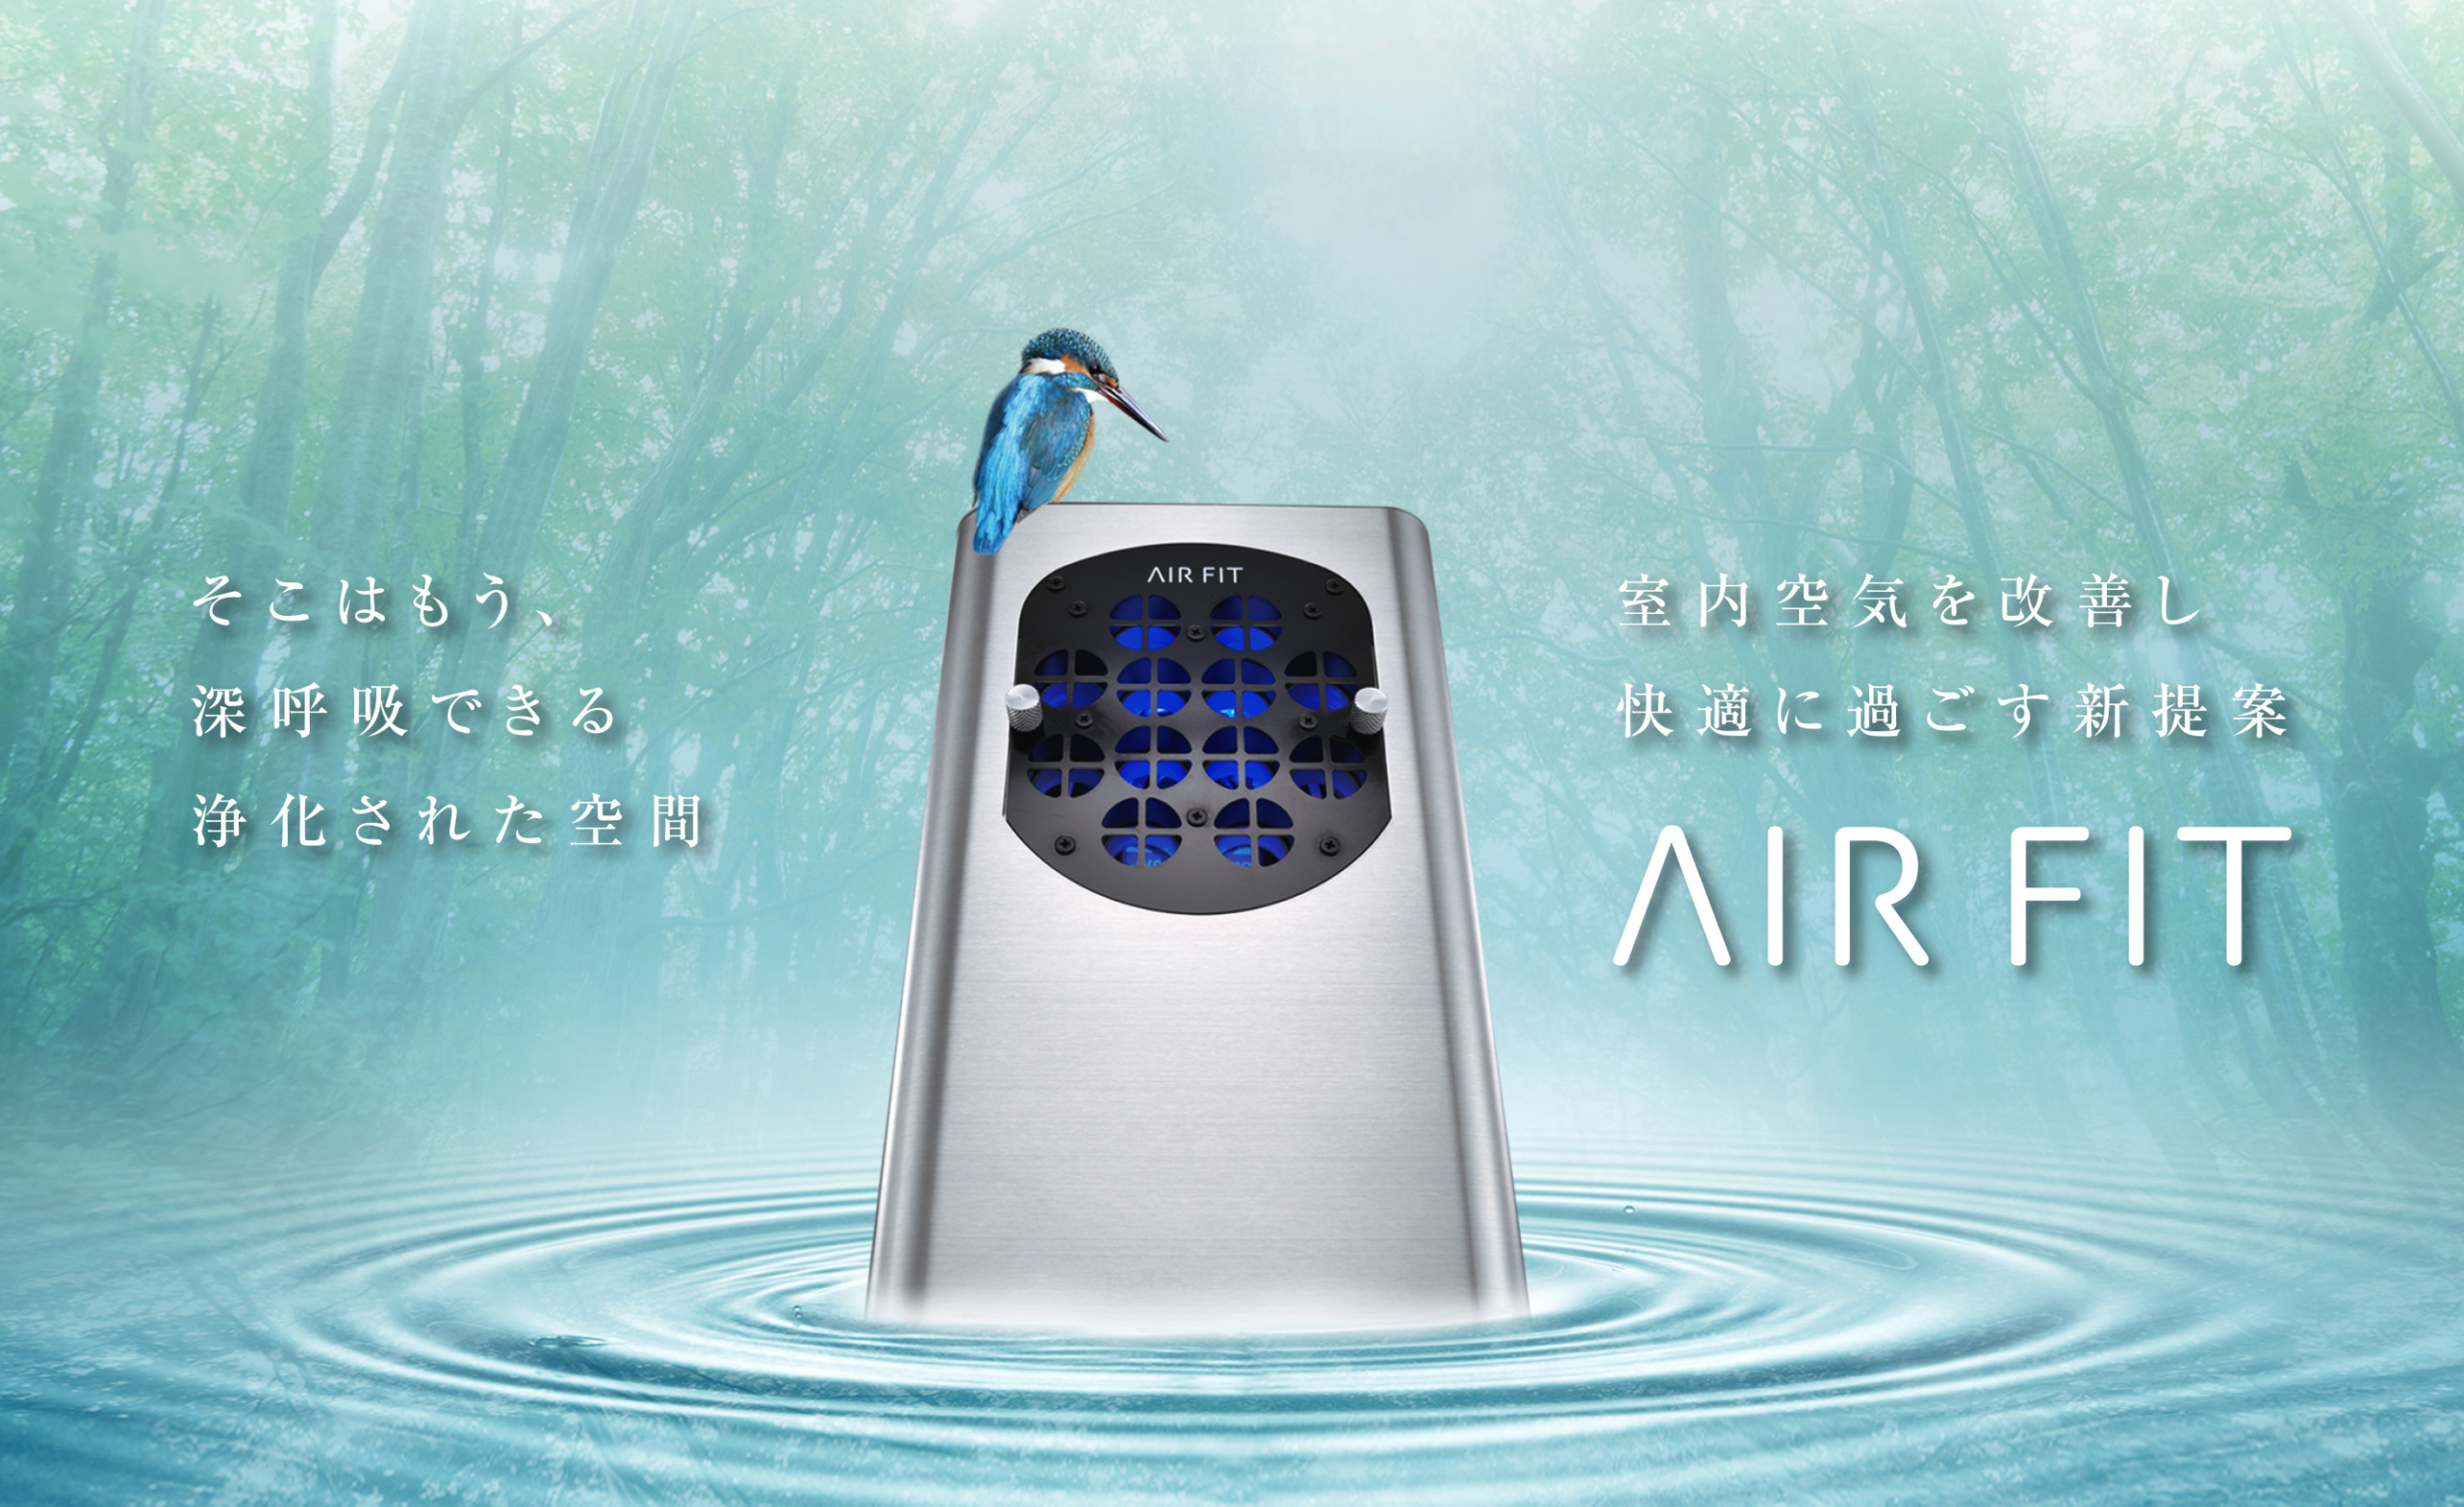 室内空気を改善する医療用物質生成器 エアフィット(AIR FIT)が
販路を拡大して販売を開始